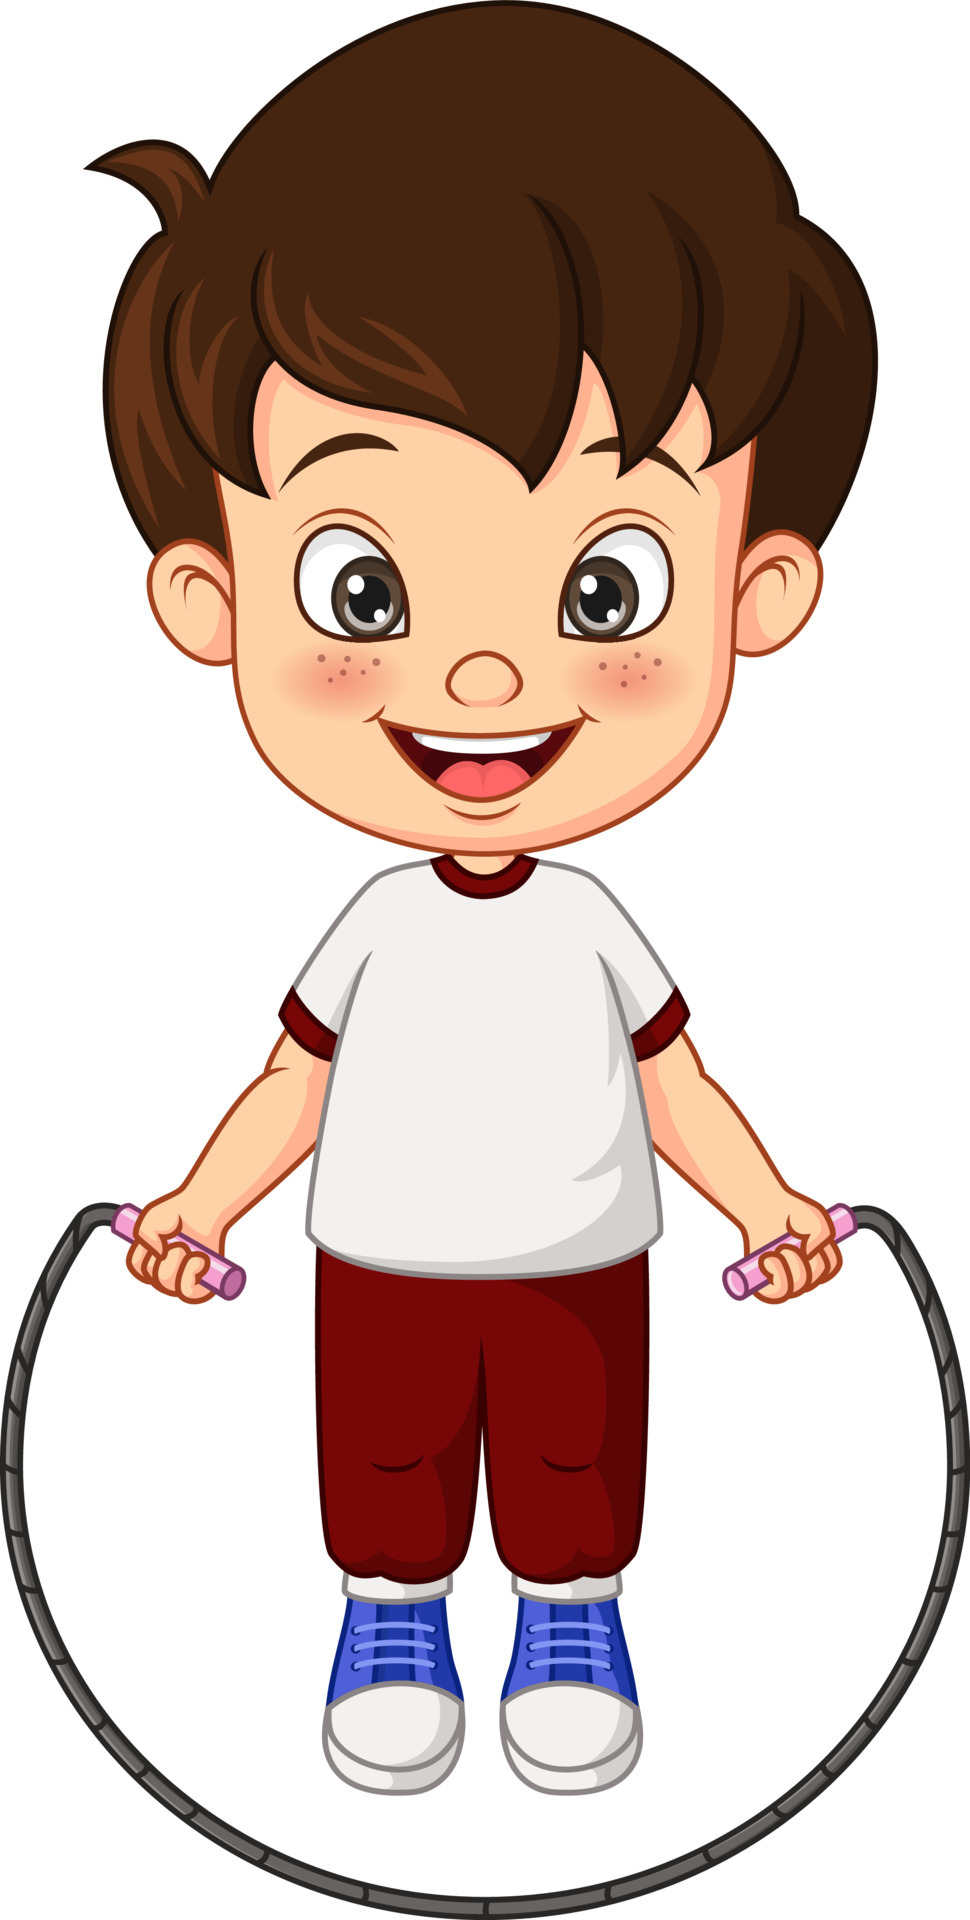 Cartoon boy jumping rope Royalty Free Vector Image